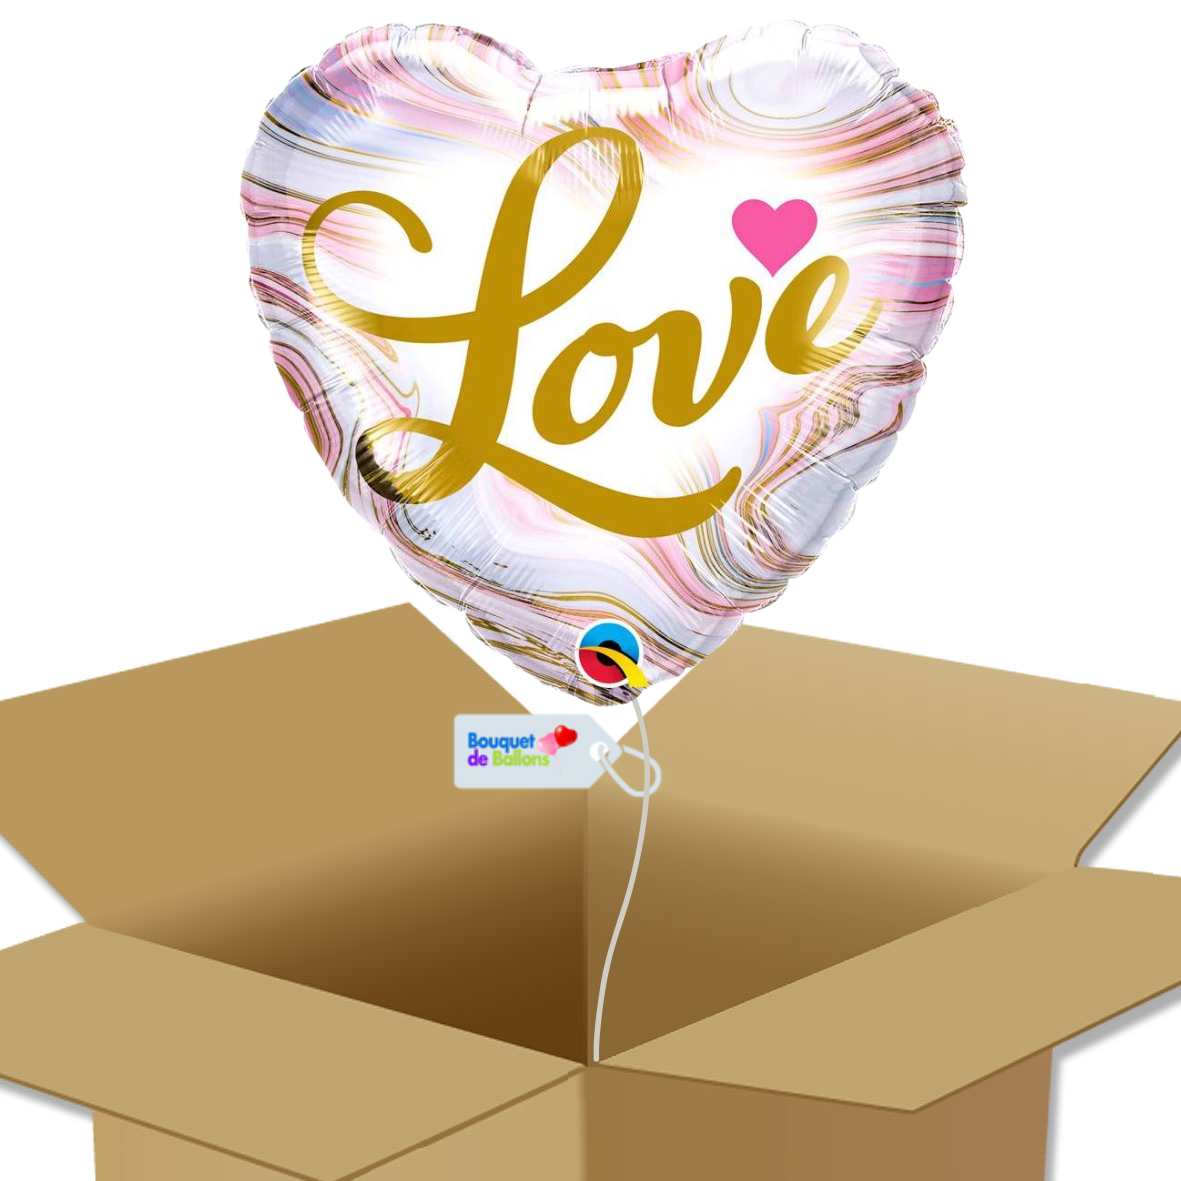 Ballons dorés mats en forme de cœur attachés à une boîte cadeau